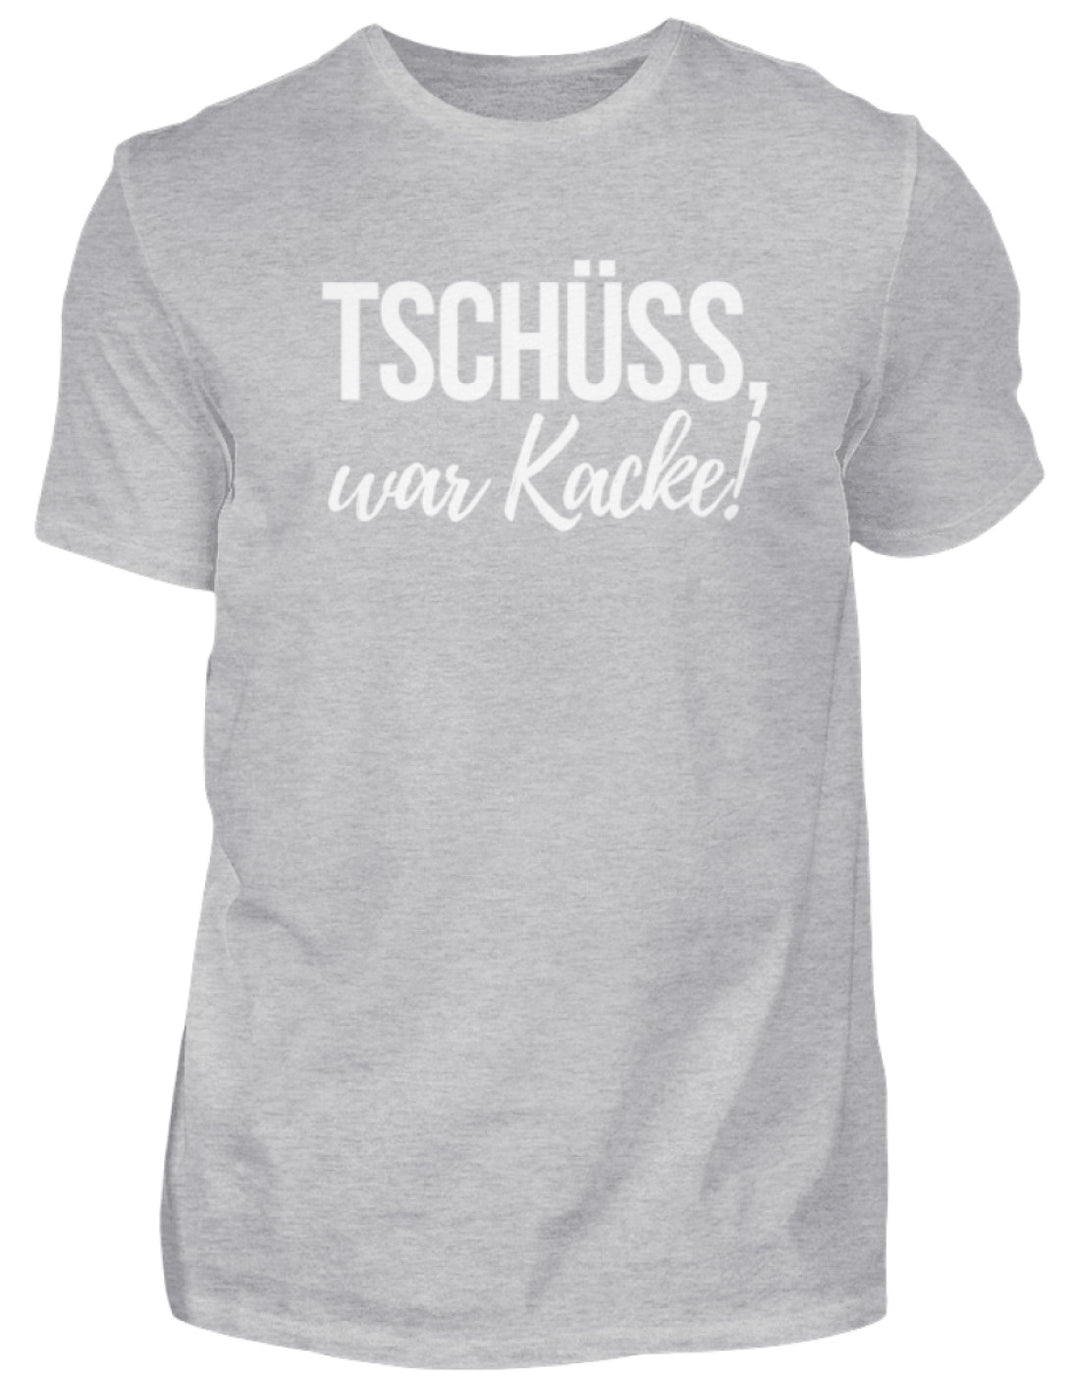 Tschüss, war Kacke!  - Herren Shirt - Words on Shirts